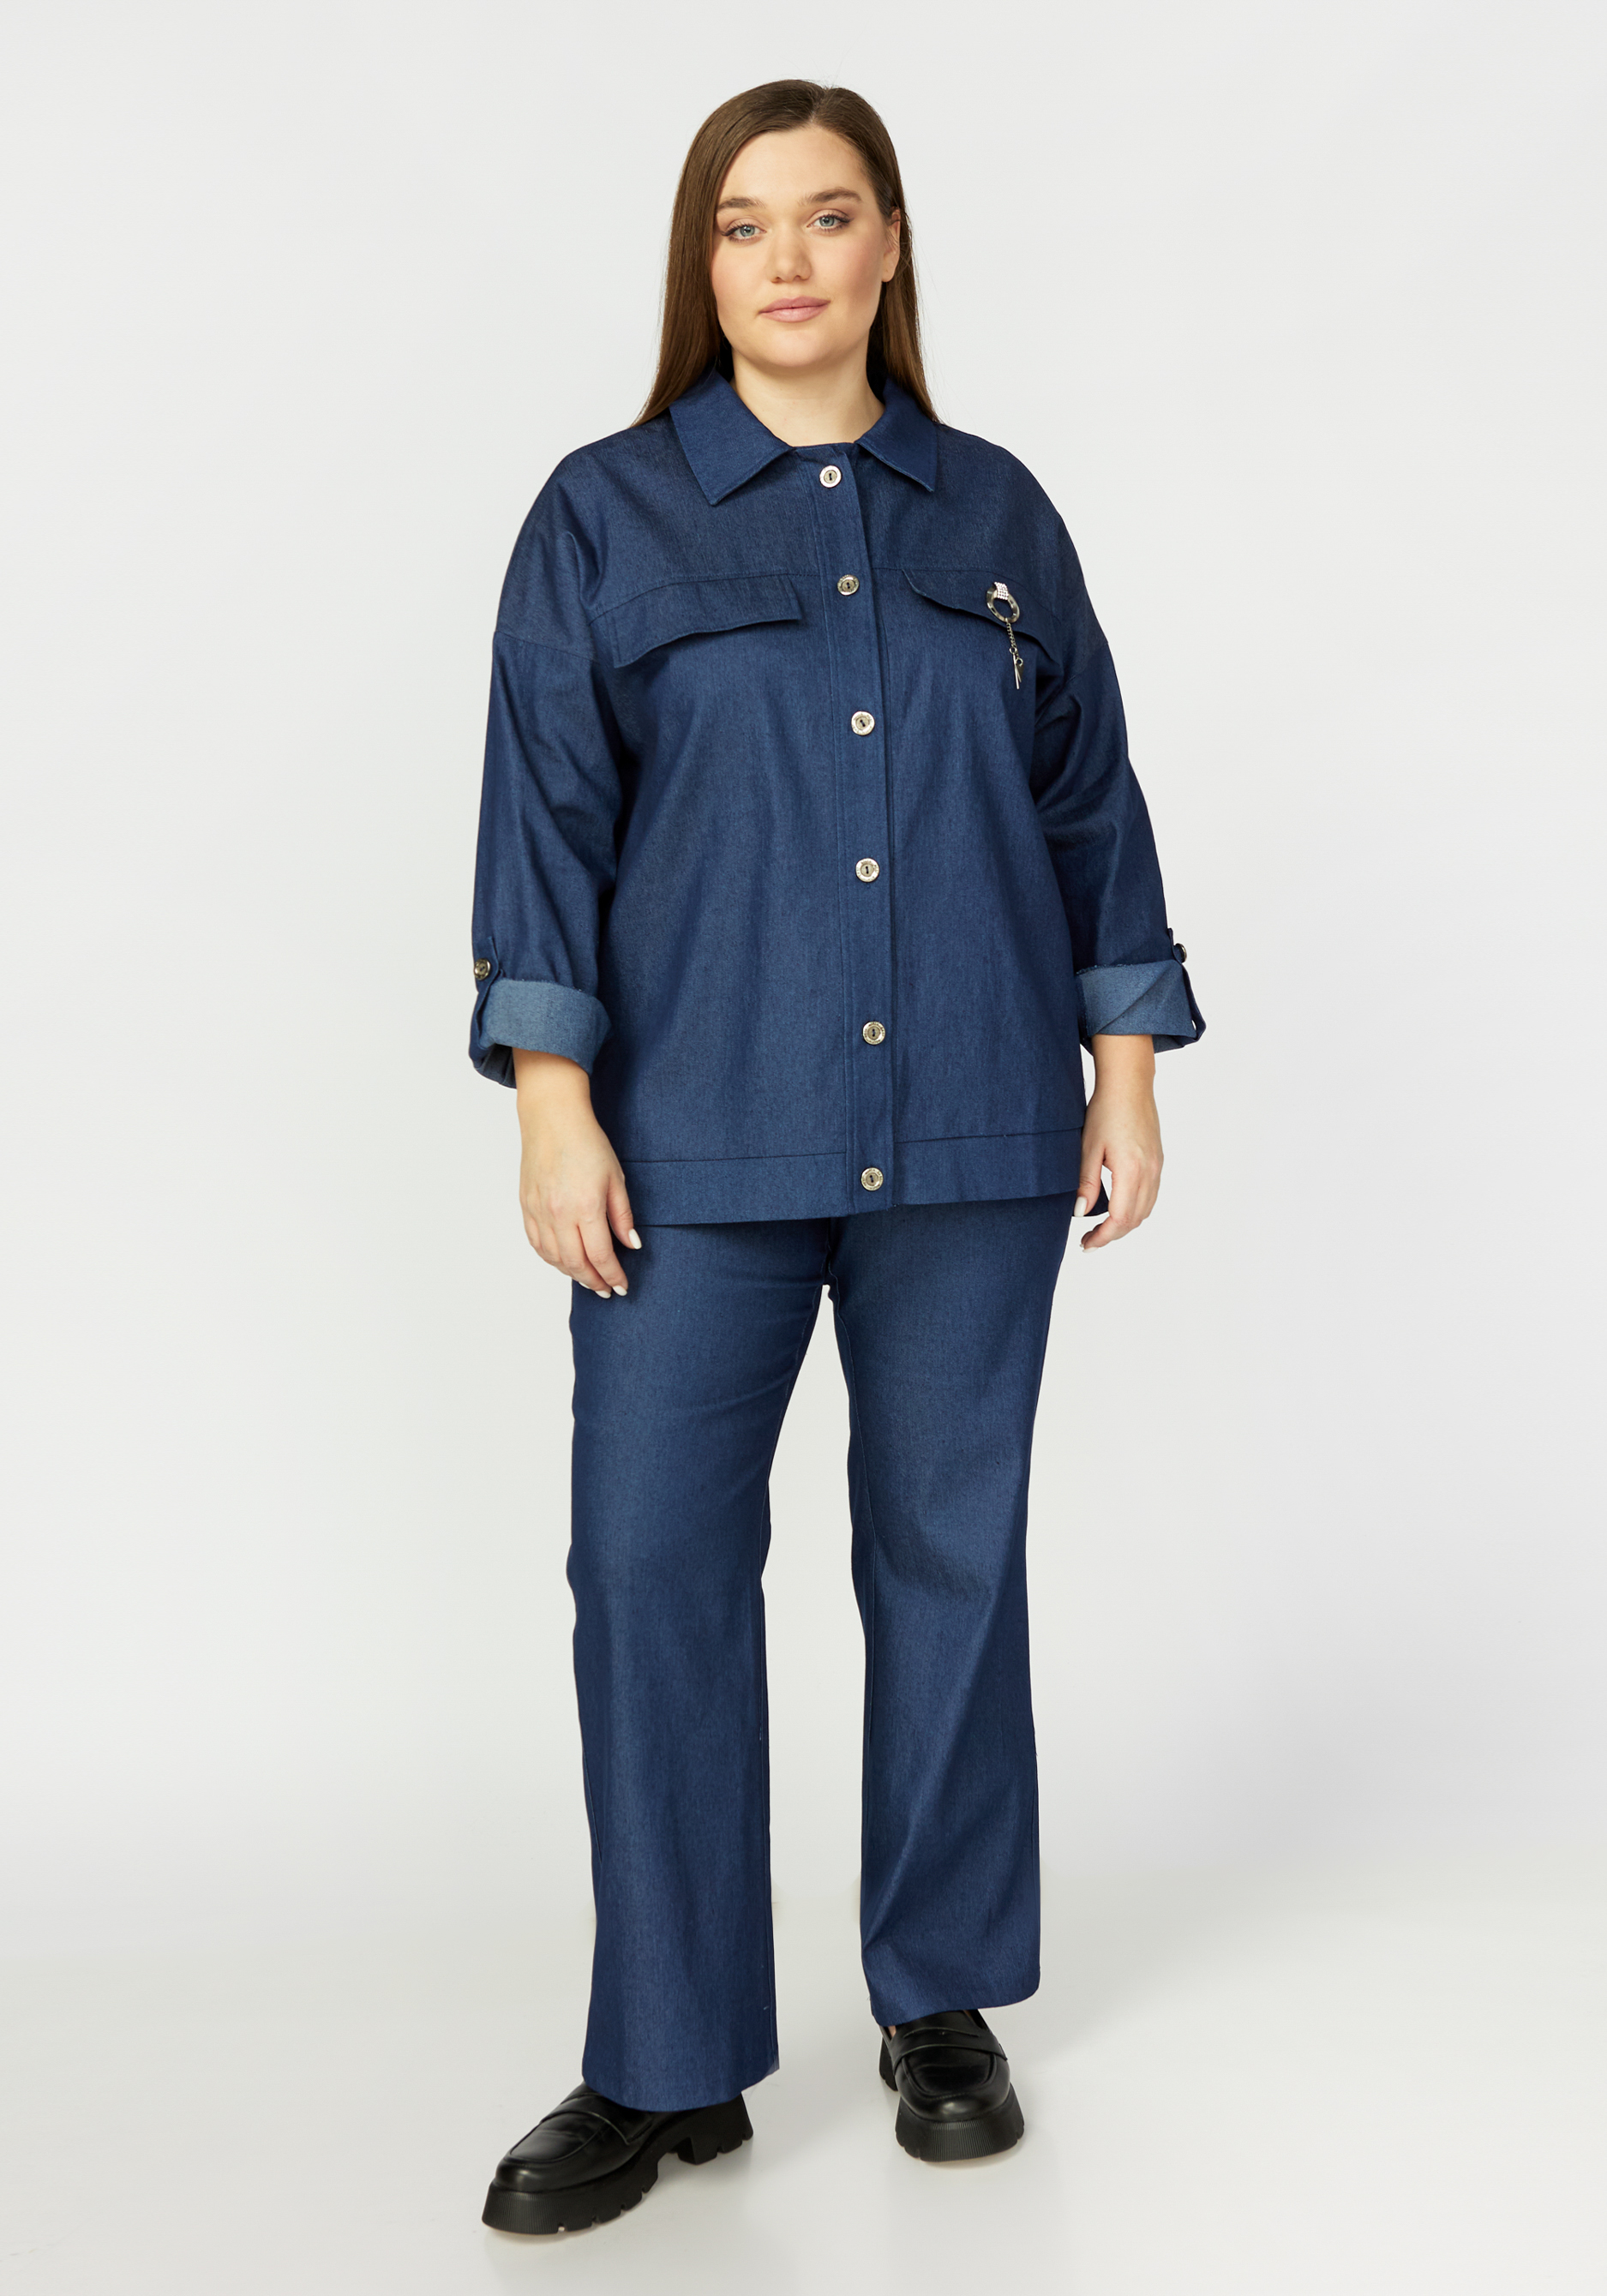 Жакет джинсовый с отложным воротником Manhattan, размер 48, цвет синий - фото 4